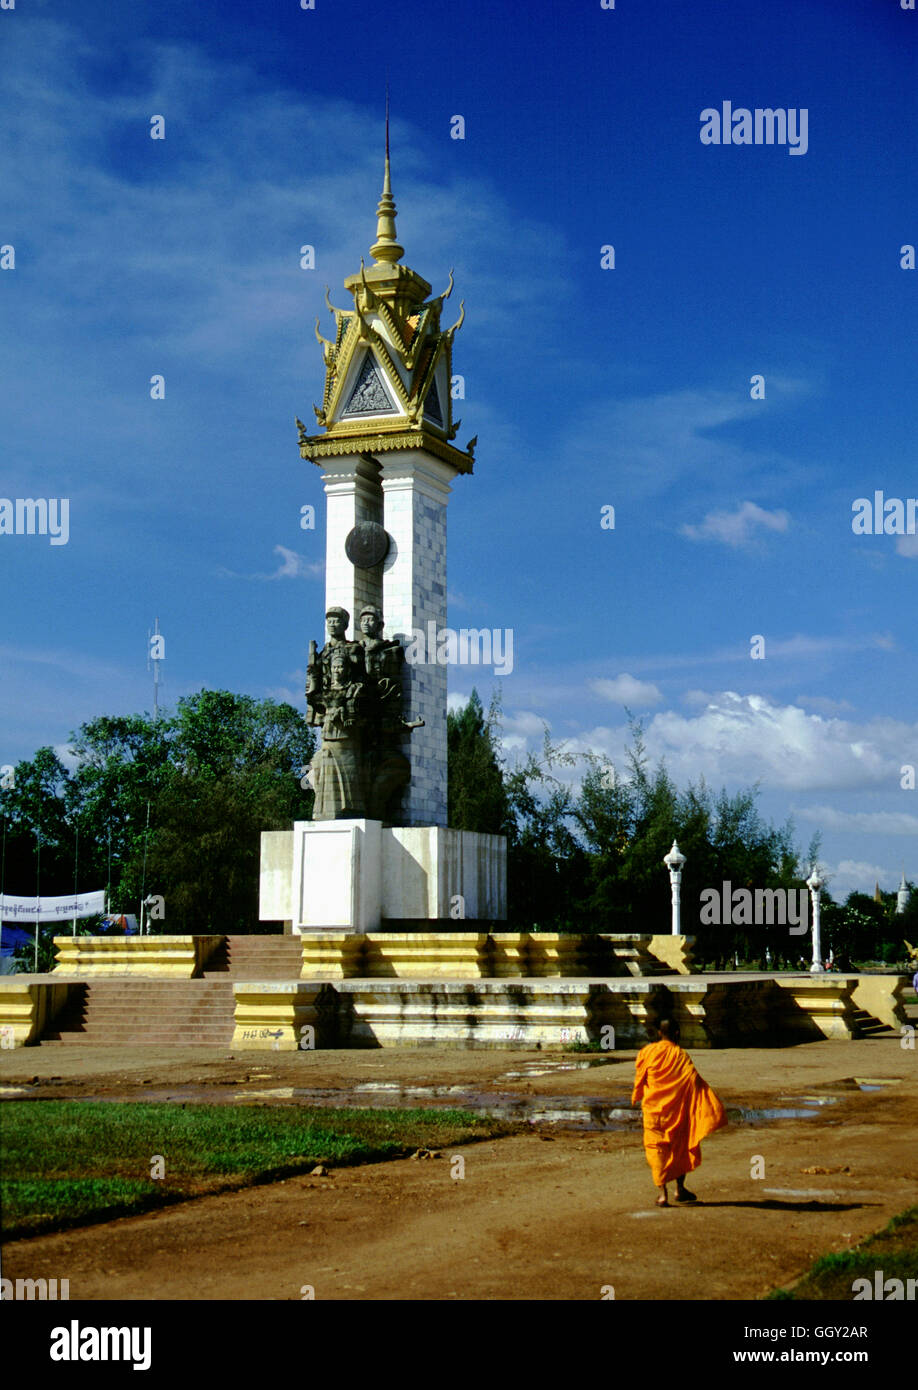 El 1979 Cambodian-Vietnam monumento que conmemora la caída del régimen de los Jemeres Rojos. Phnom Penh - Camboya Foto de stock